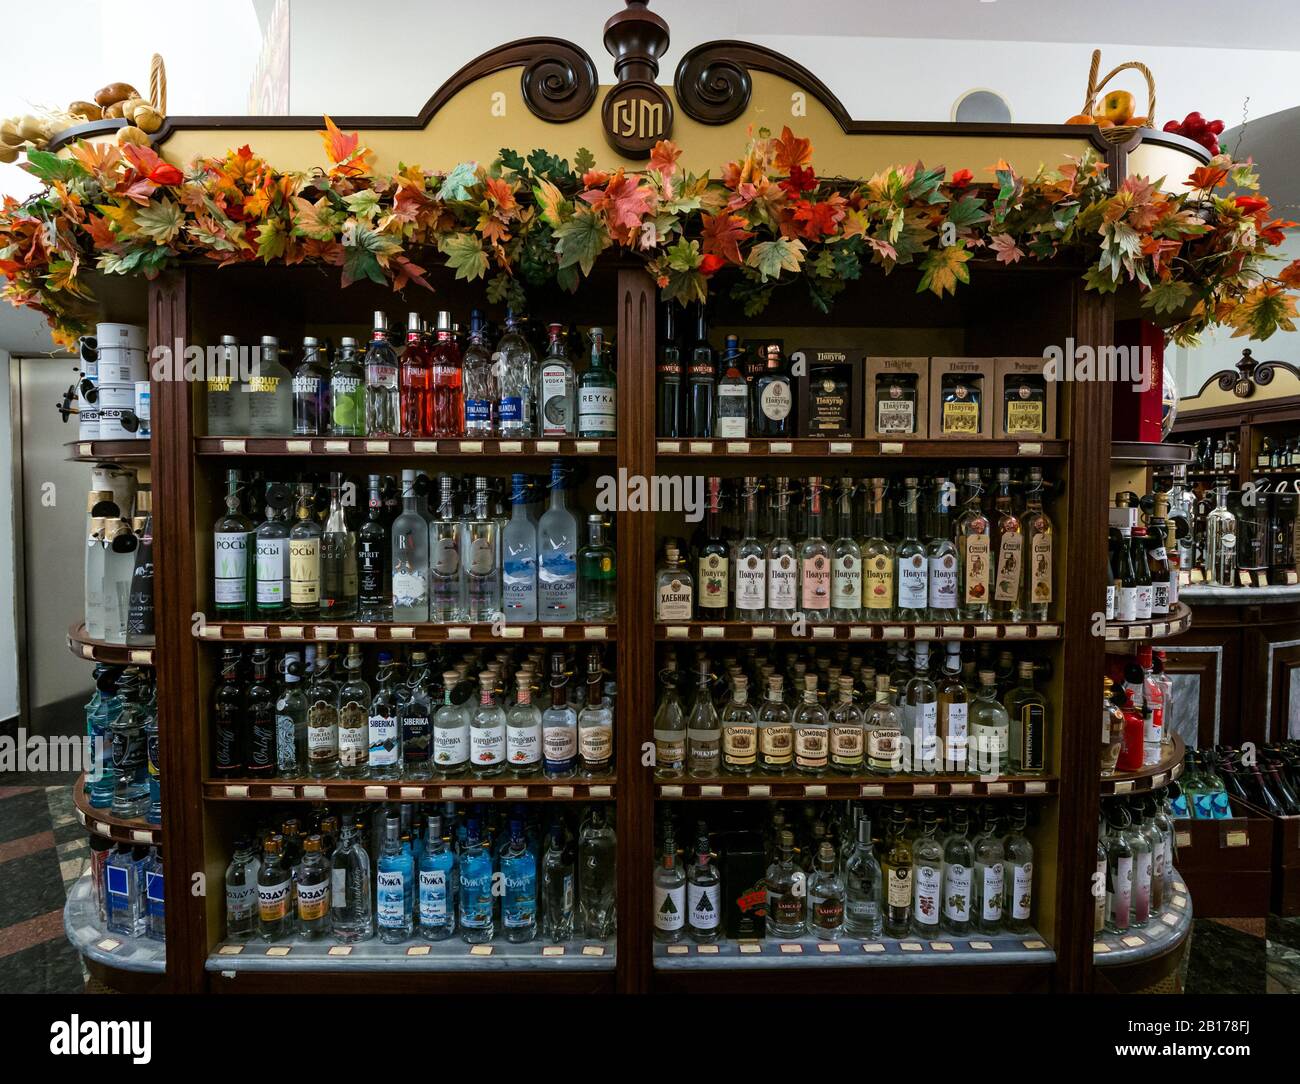 Bottiglie e marchi di vodka sugli scaffali, esposizione di grandi magazzini GUM, Mosca, Federazione russa Foto Stock